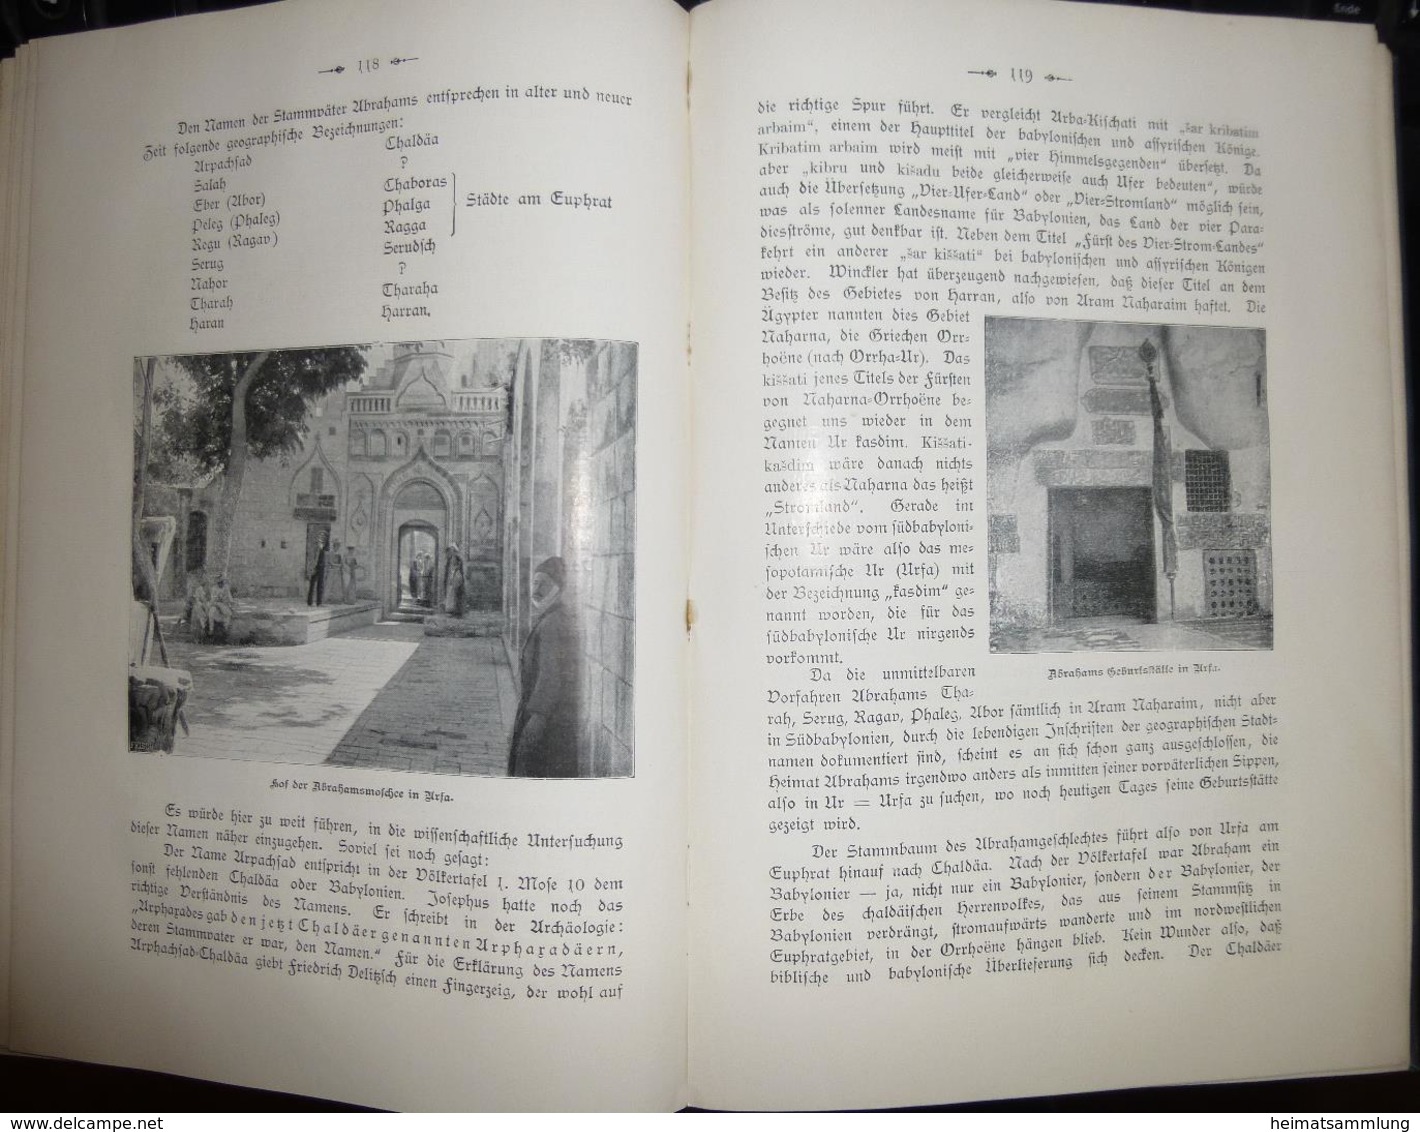 Ex Oriente Lux 1903 - Jahrbuch Der Deutschen Orient-Mission - Herausgeber Dr. Johannes Lepsius - 252 Seiten Mit 70 Abbil - Alemania Todos